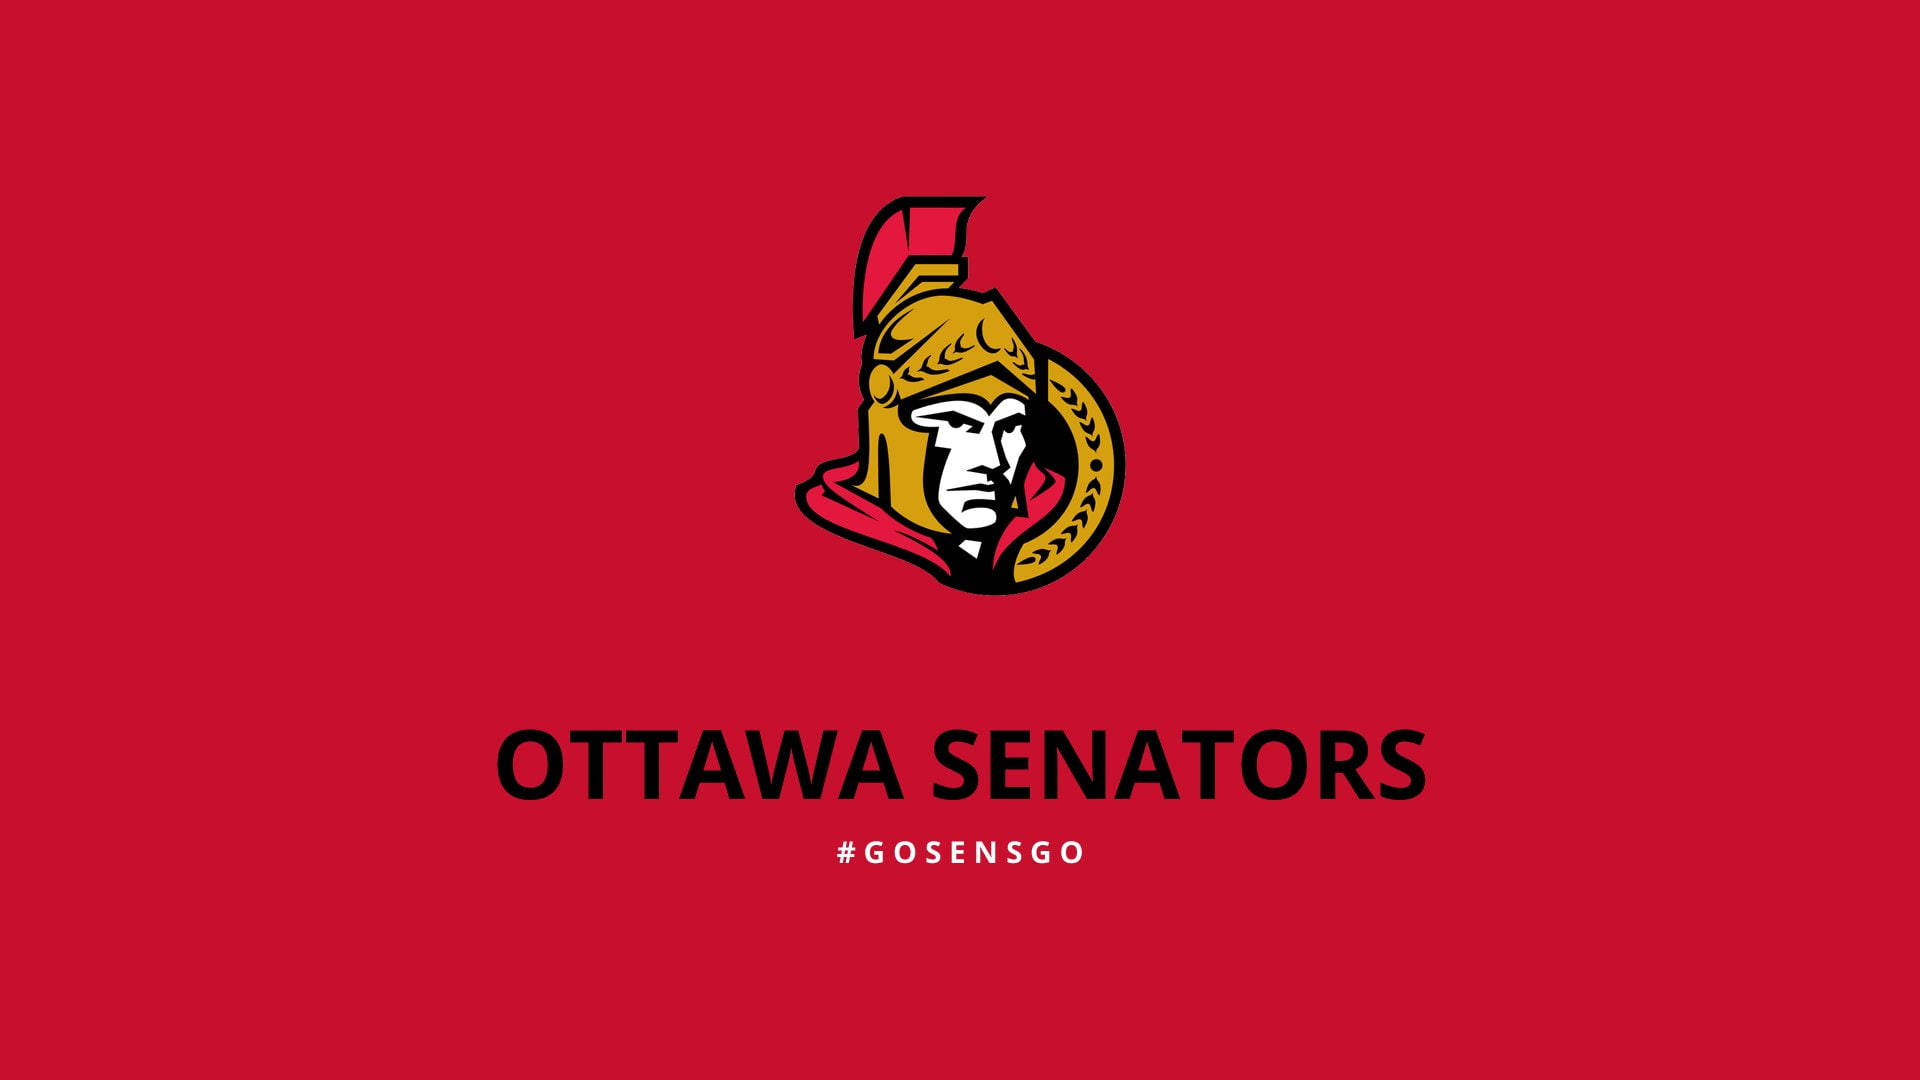 Ottawa Senators Red Poster